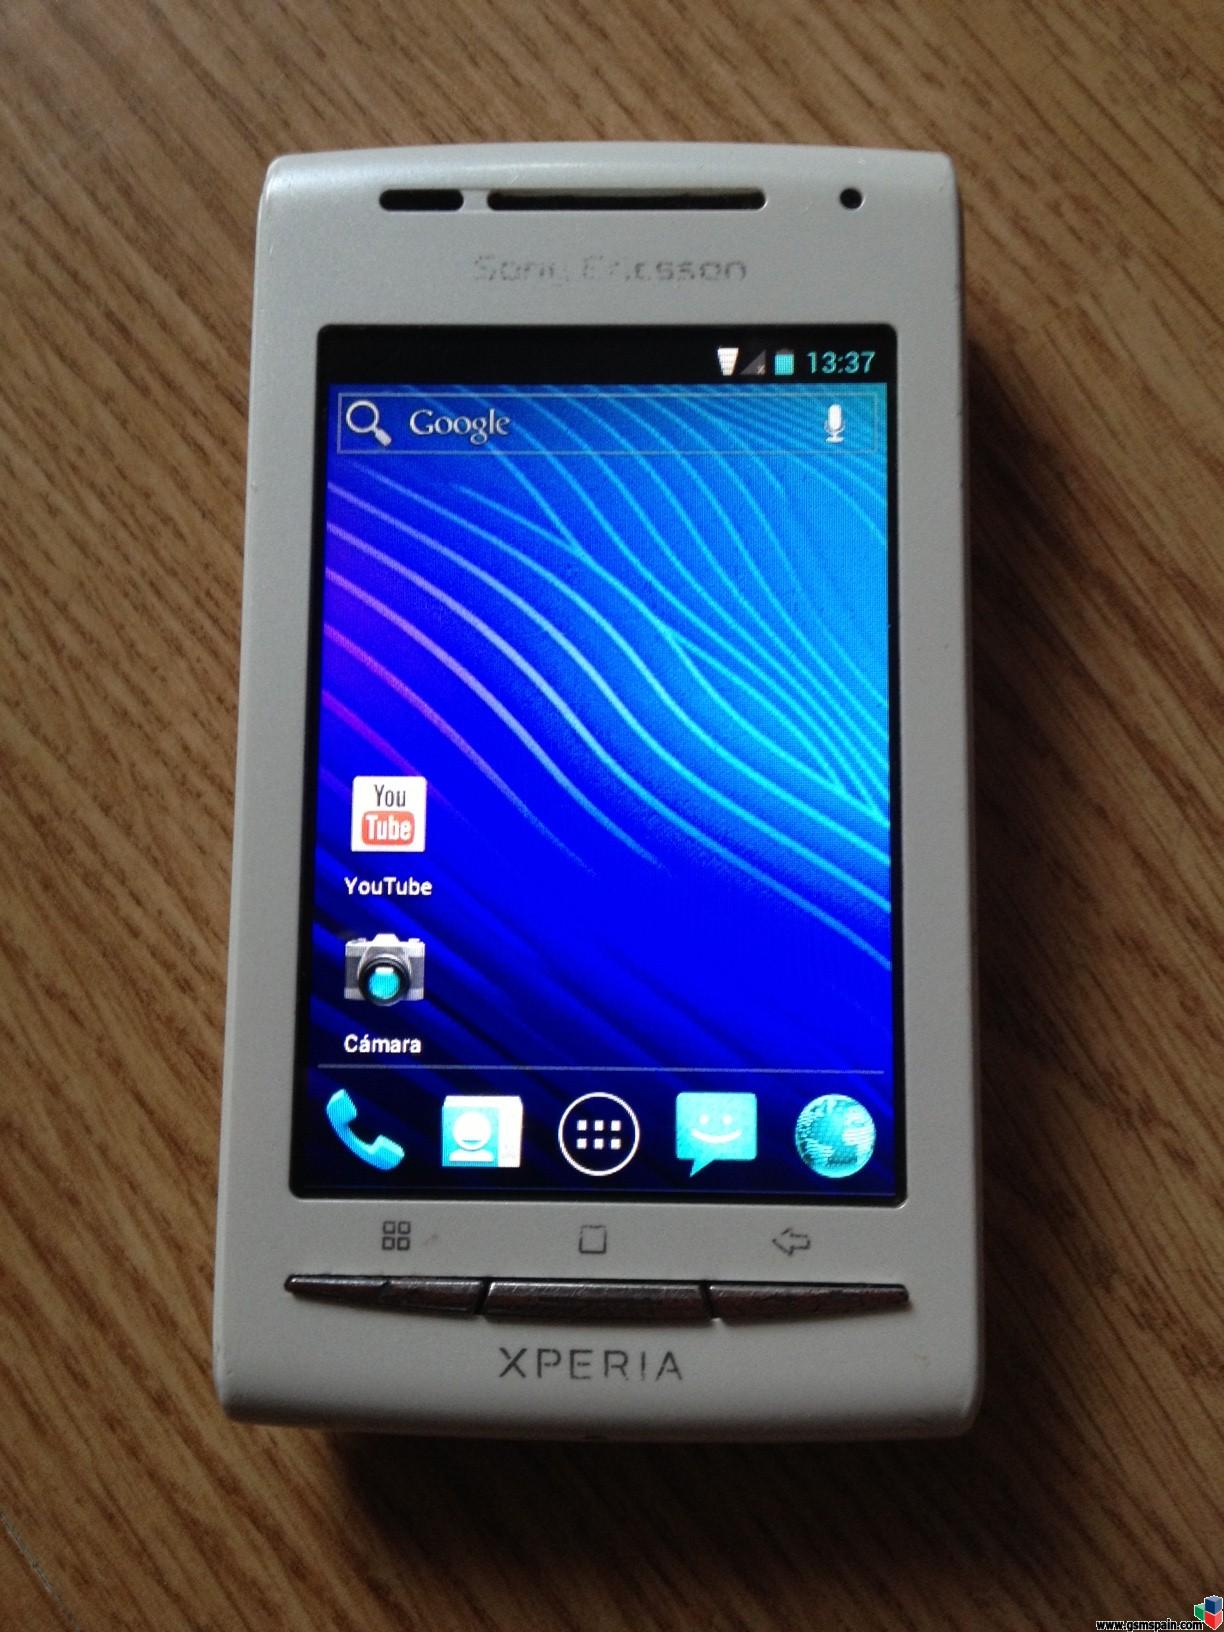 [VENDO] Sony Ericsson Xperia X8 usado